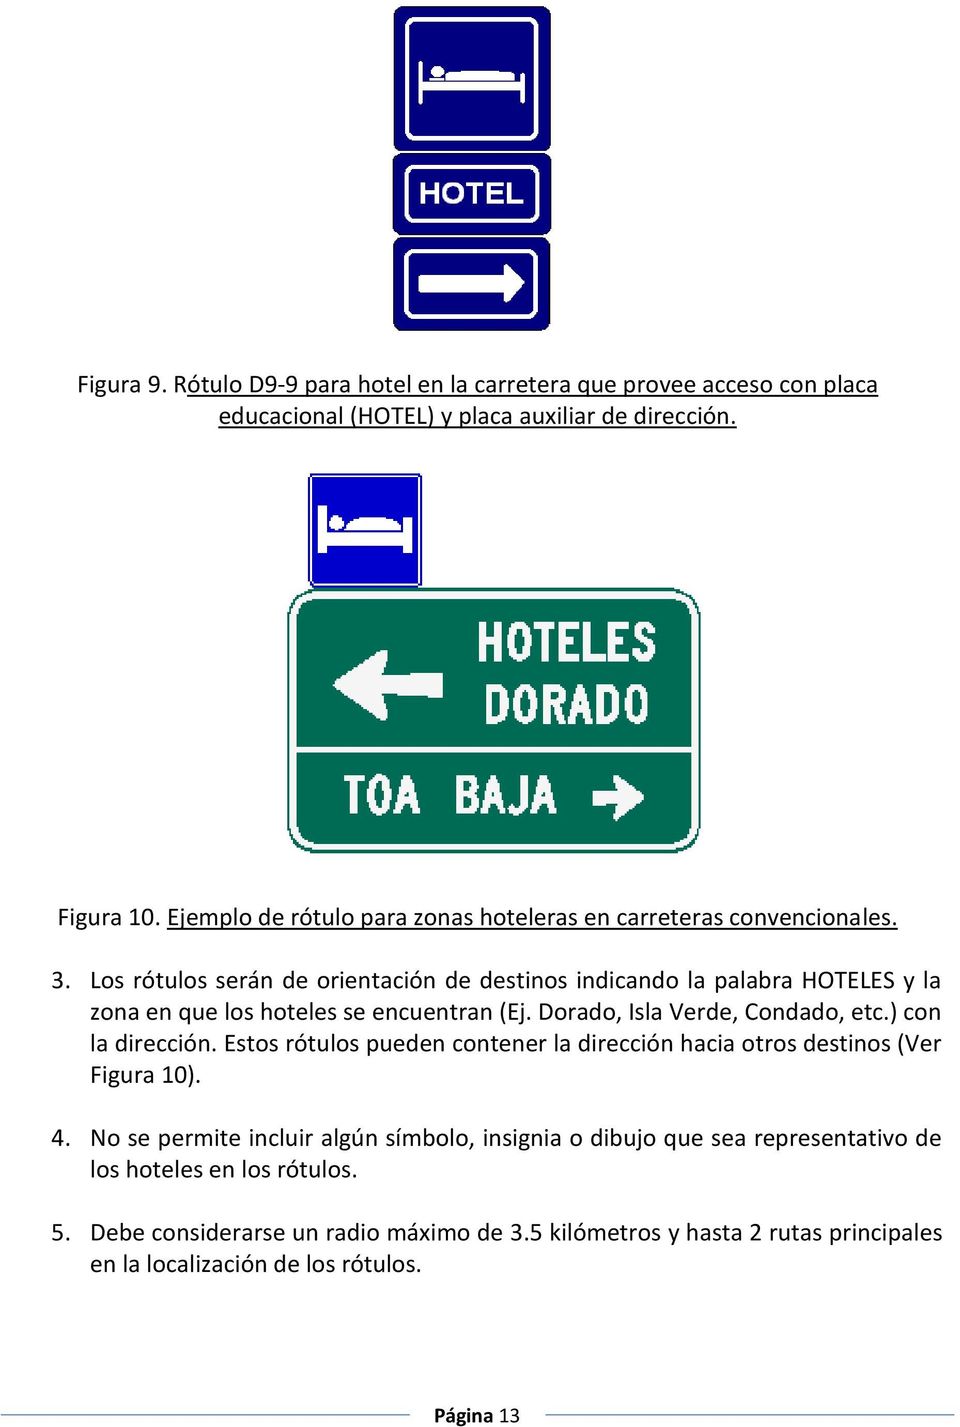 Los rótulos serán de orientación de destinos indicando la palabra HOTELES y la zona en que los hoteles se encuentran (Ej. Dorado, Isla Verde, Condado, etc.) con la dirección.